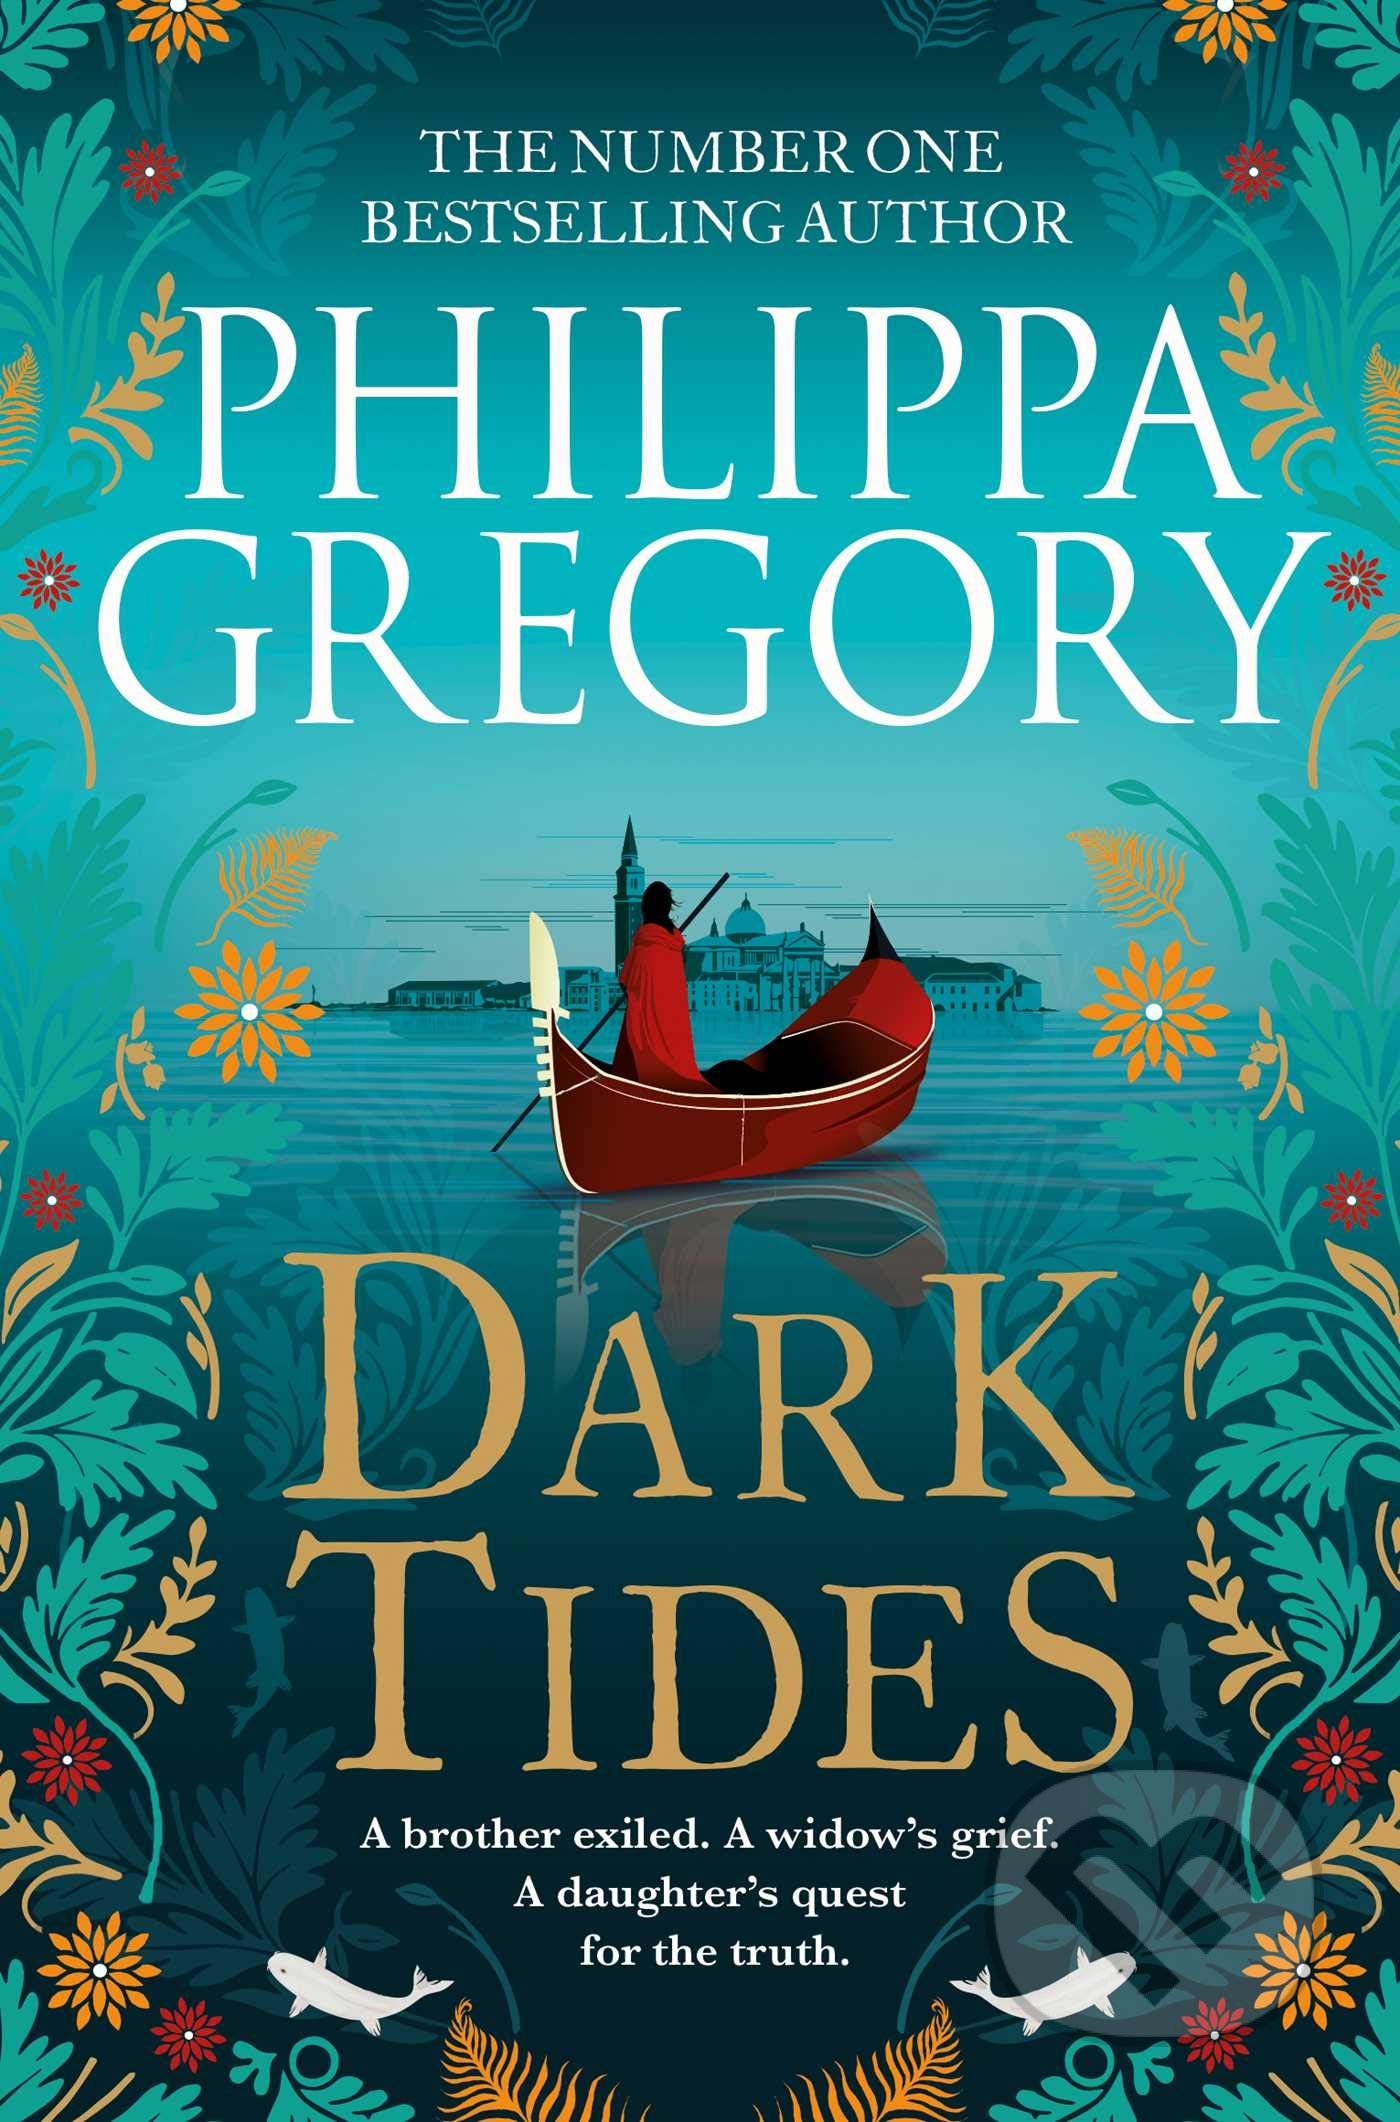 Dark Tides - Philippa Gregory, Simon & Schuster, 2021